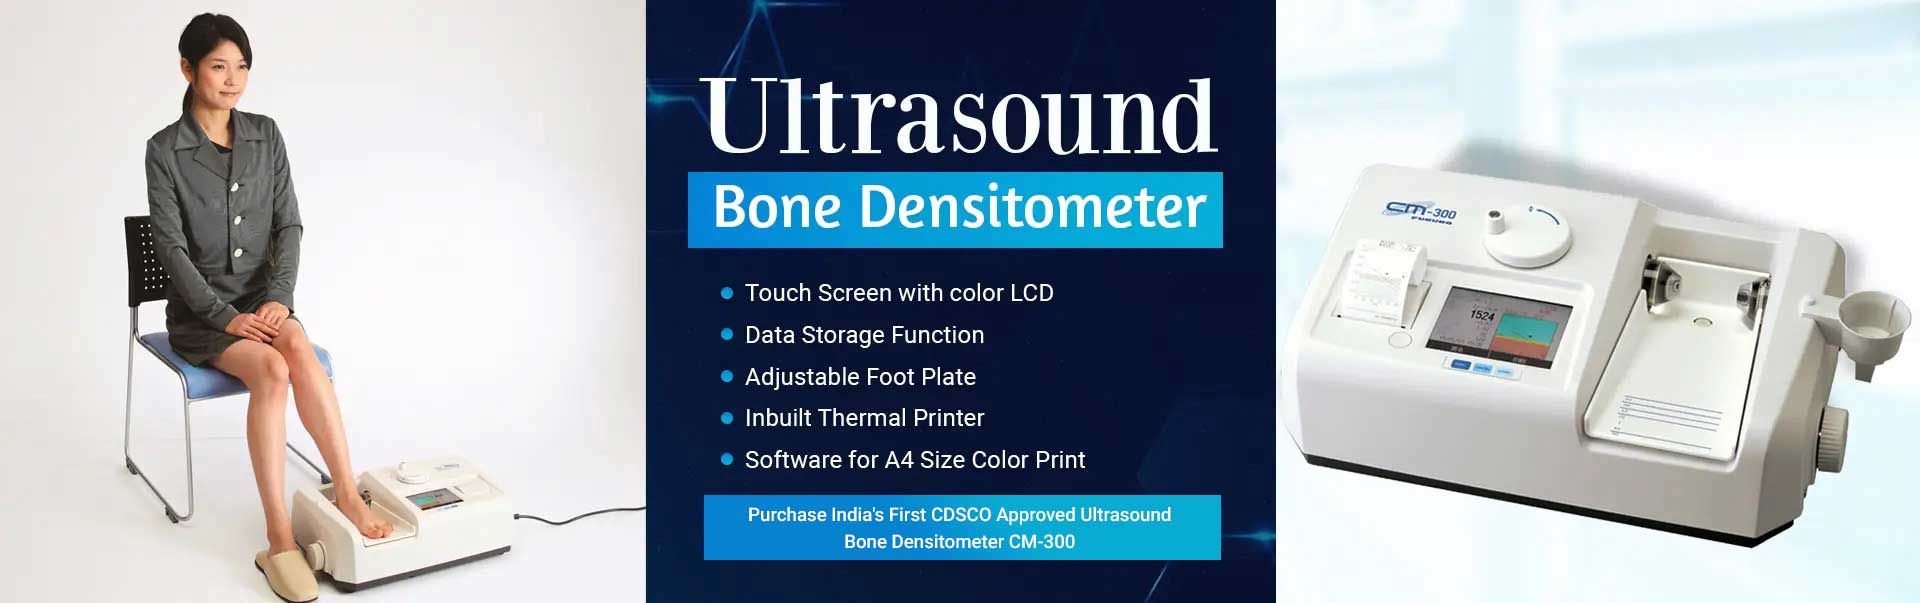 Ultrasound Bone Densitometer Manufacturers in Bhubaneswar